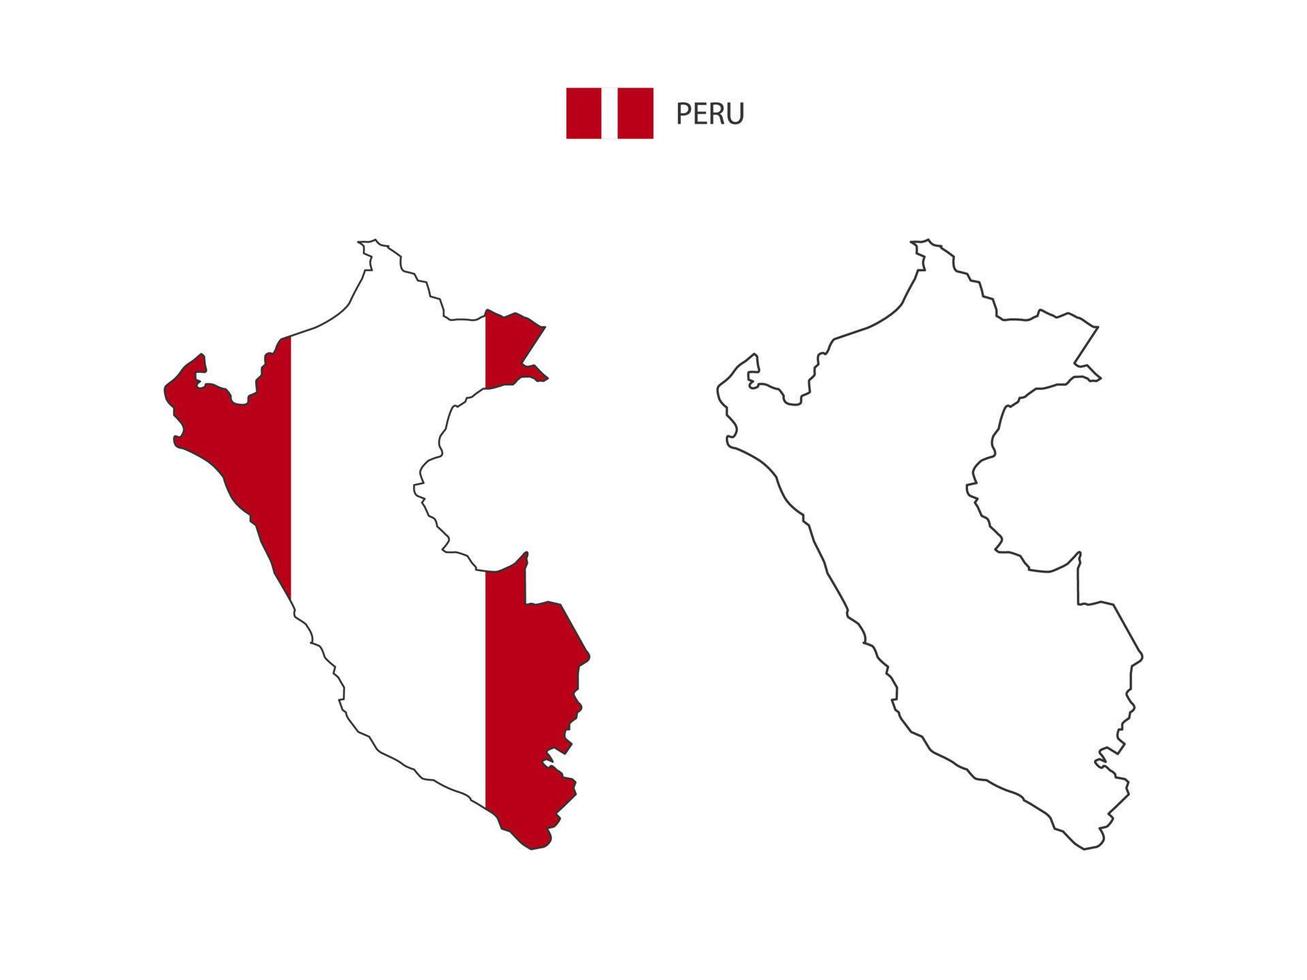 vector de ciudad de mapa de perú dividido por estilo de simplicidad de contorno. tiene 2 versiones, versión de línea delgada negra y versión de color de bandera de país. ambos mapas estaban en el fondo blanco.